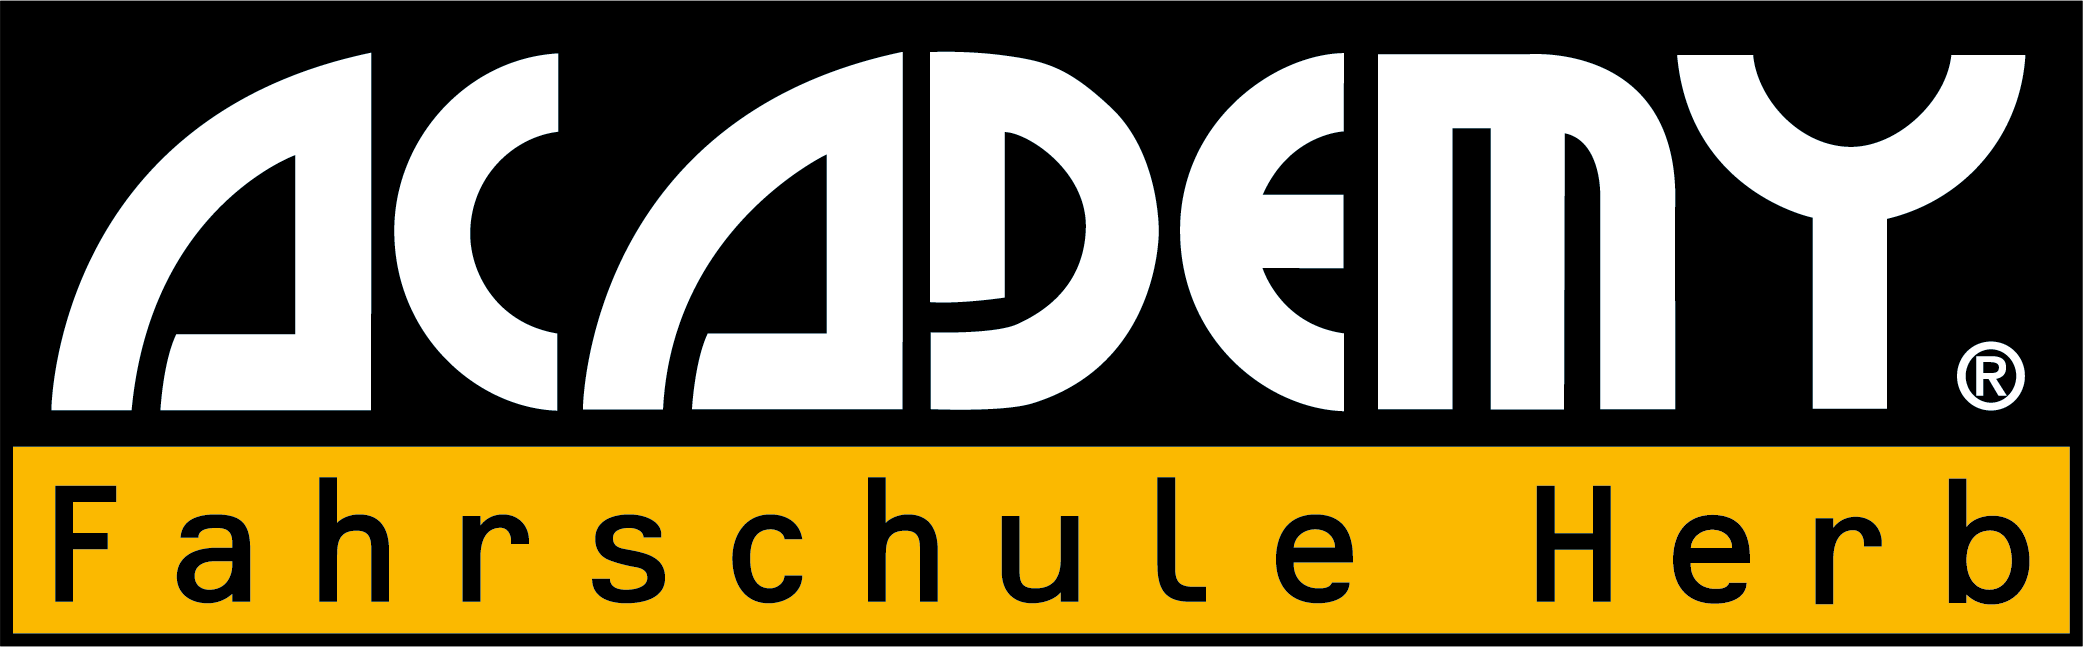 ACADEMY Fahrschule Herb GmbH